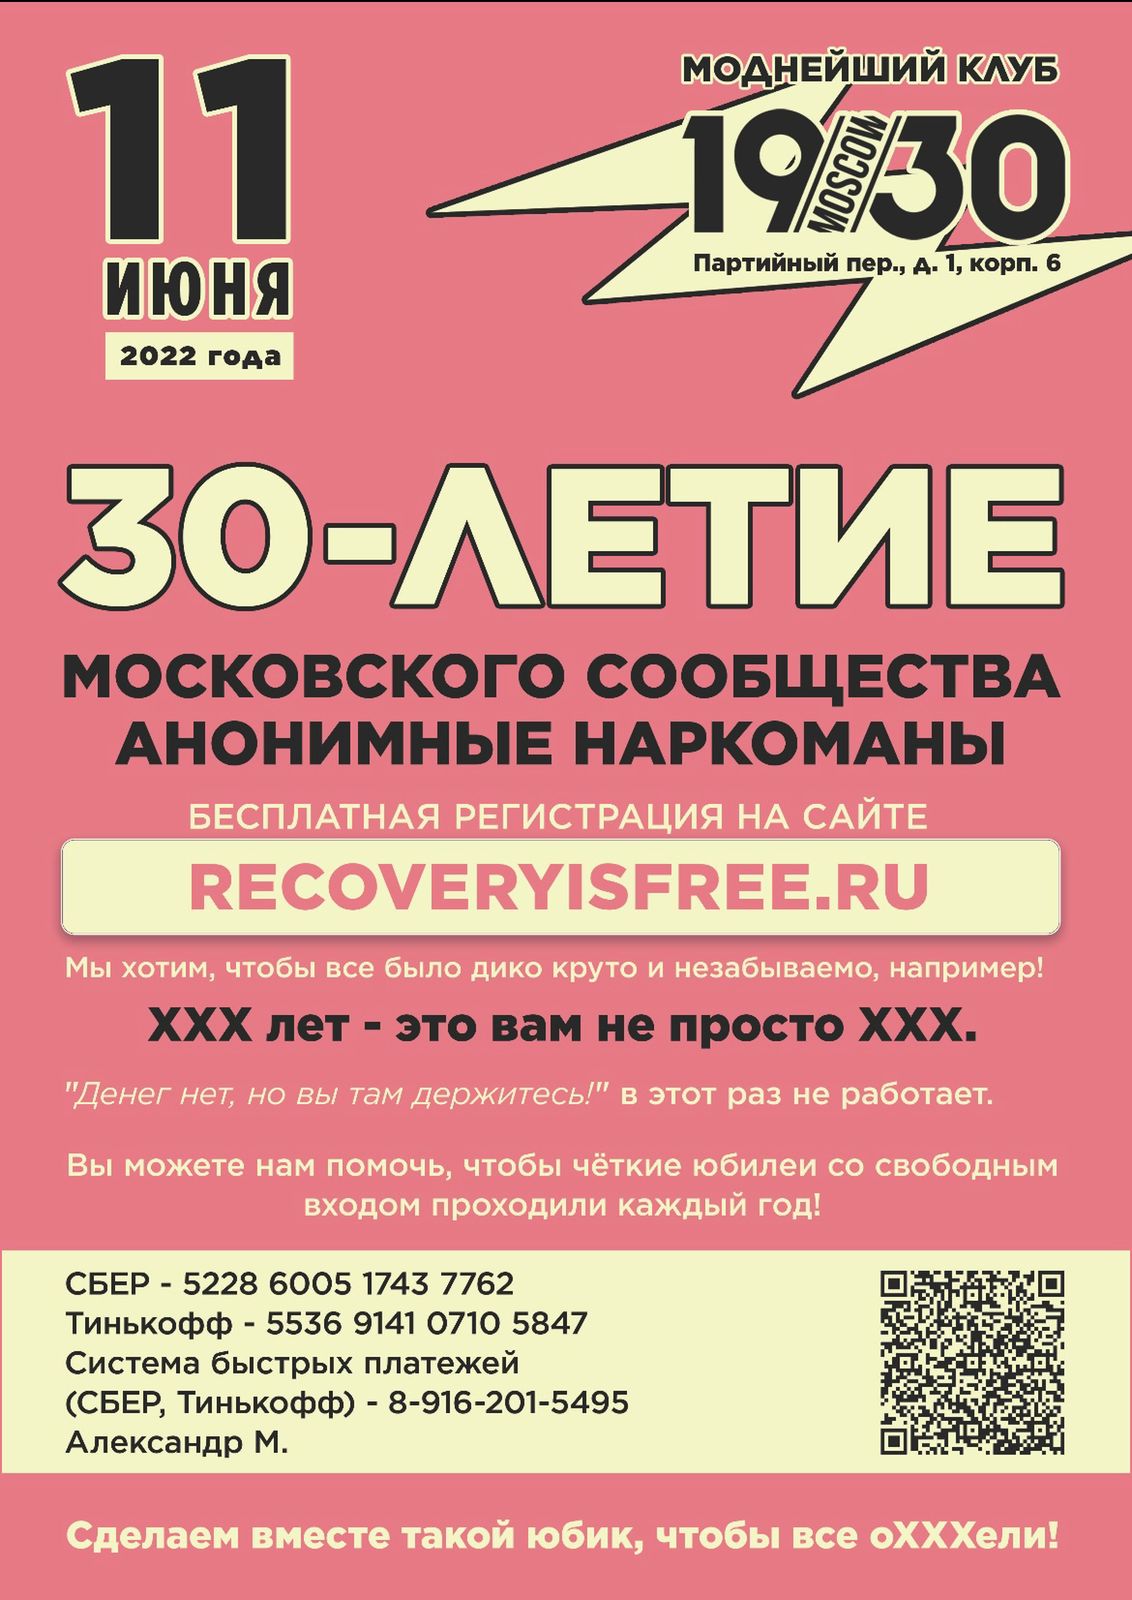 30-й юбилей московского сообщества АН  "Recovery is 30"